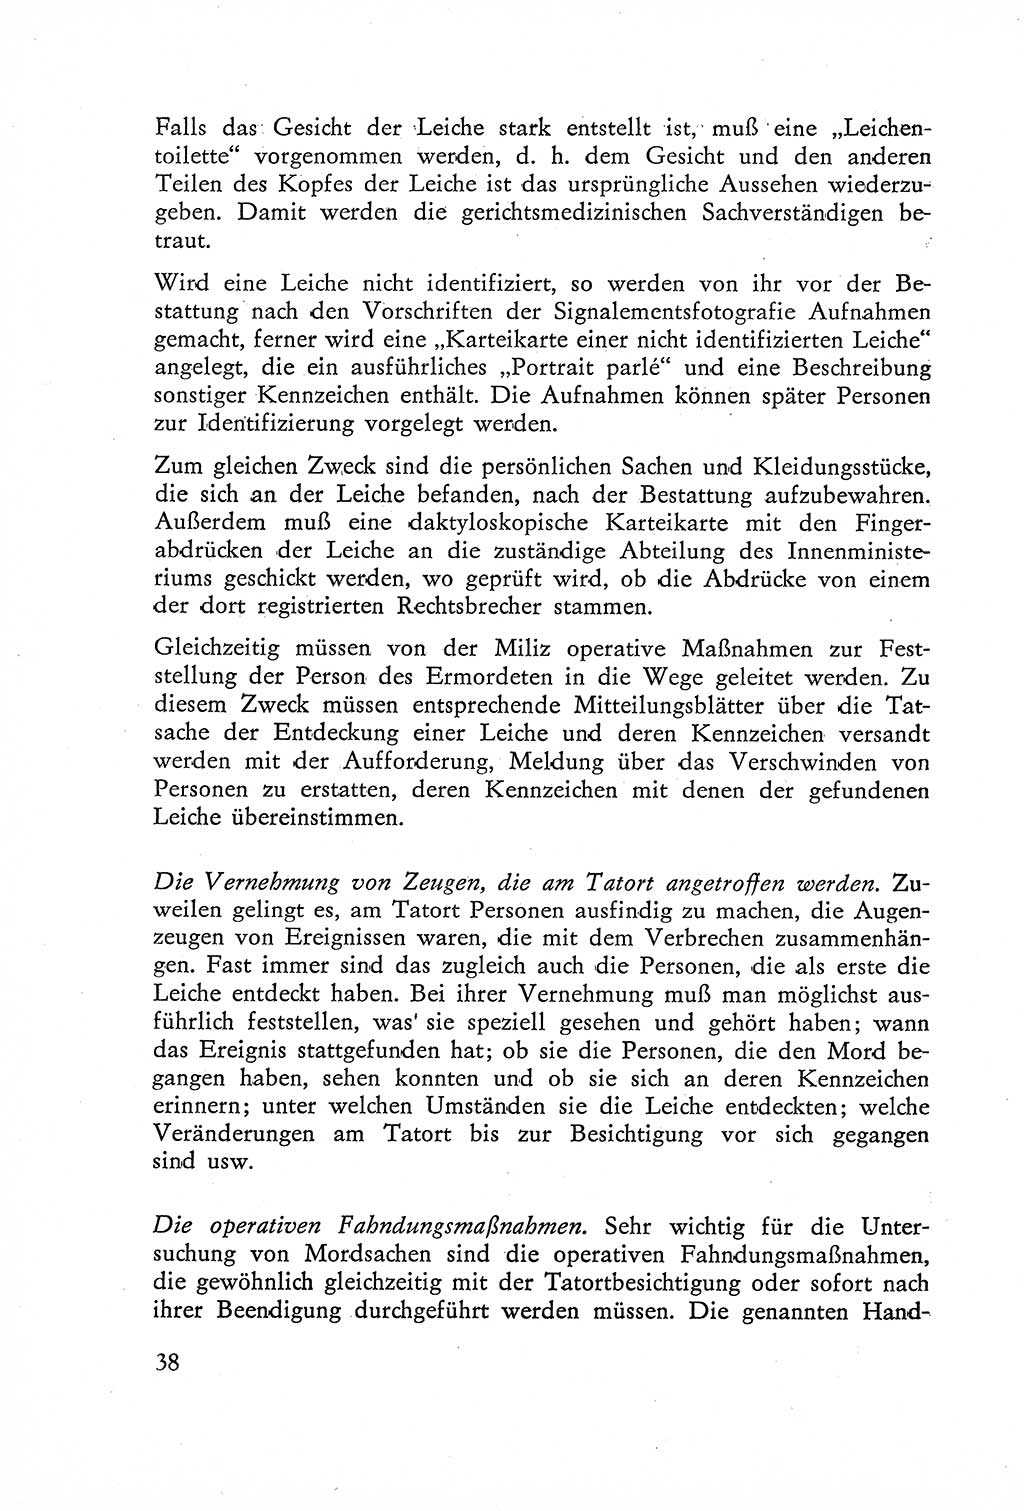 Die Untersuchung einzelner Verbrechensarten [Deutsche Demokratische Republik (DDR)] 1960, Seite 38 (Unters. Verbr.-Art. DDR 1960, S. 38)